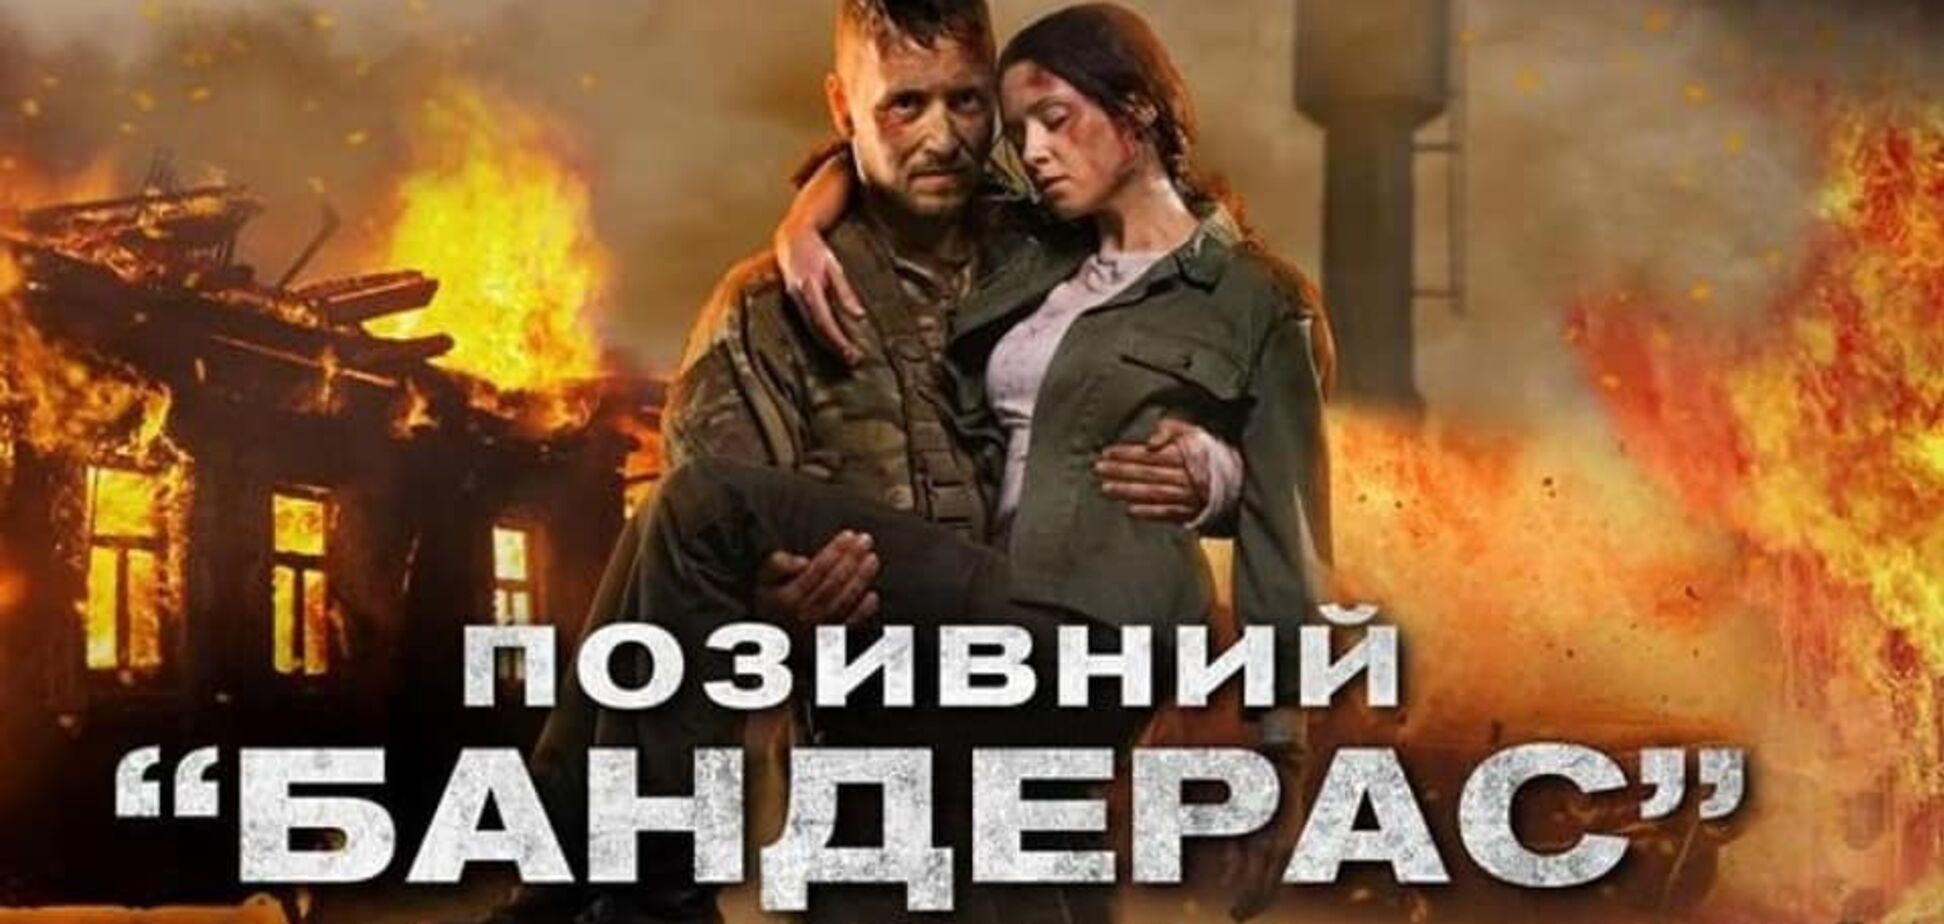 Прилепин бьется в истерике, в Севастополе вместо его 'фильма' показали 'Позывной Бандерас'